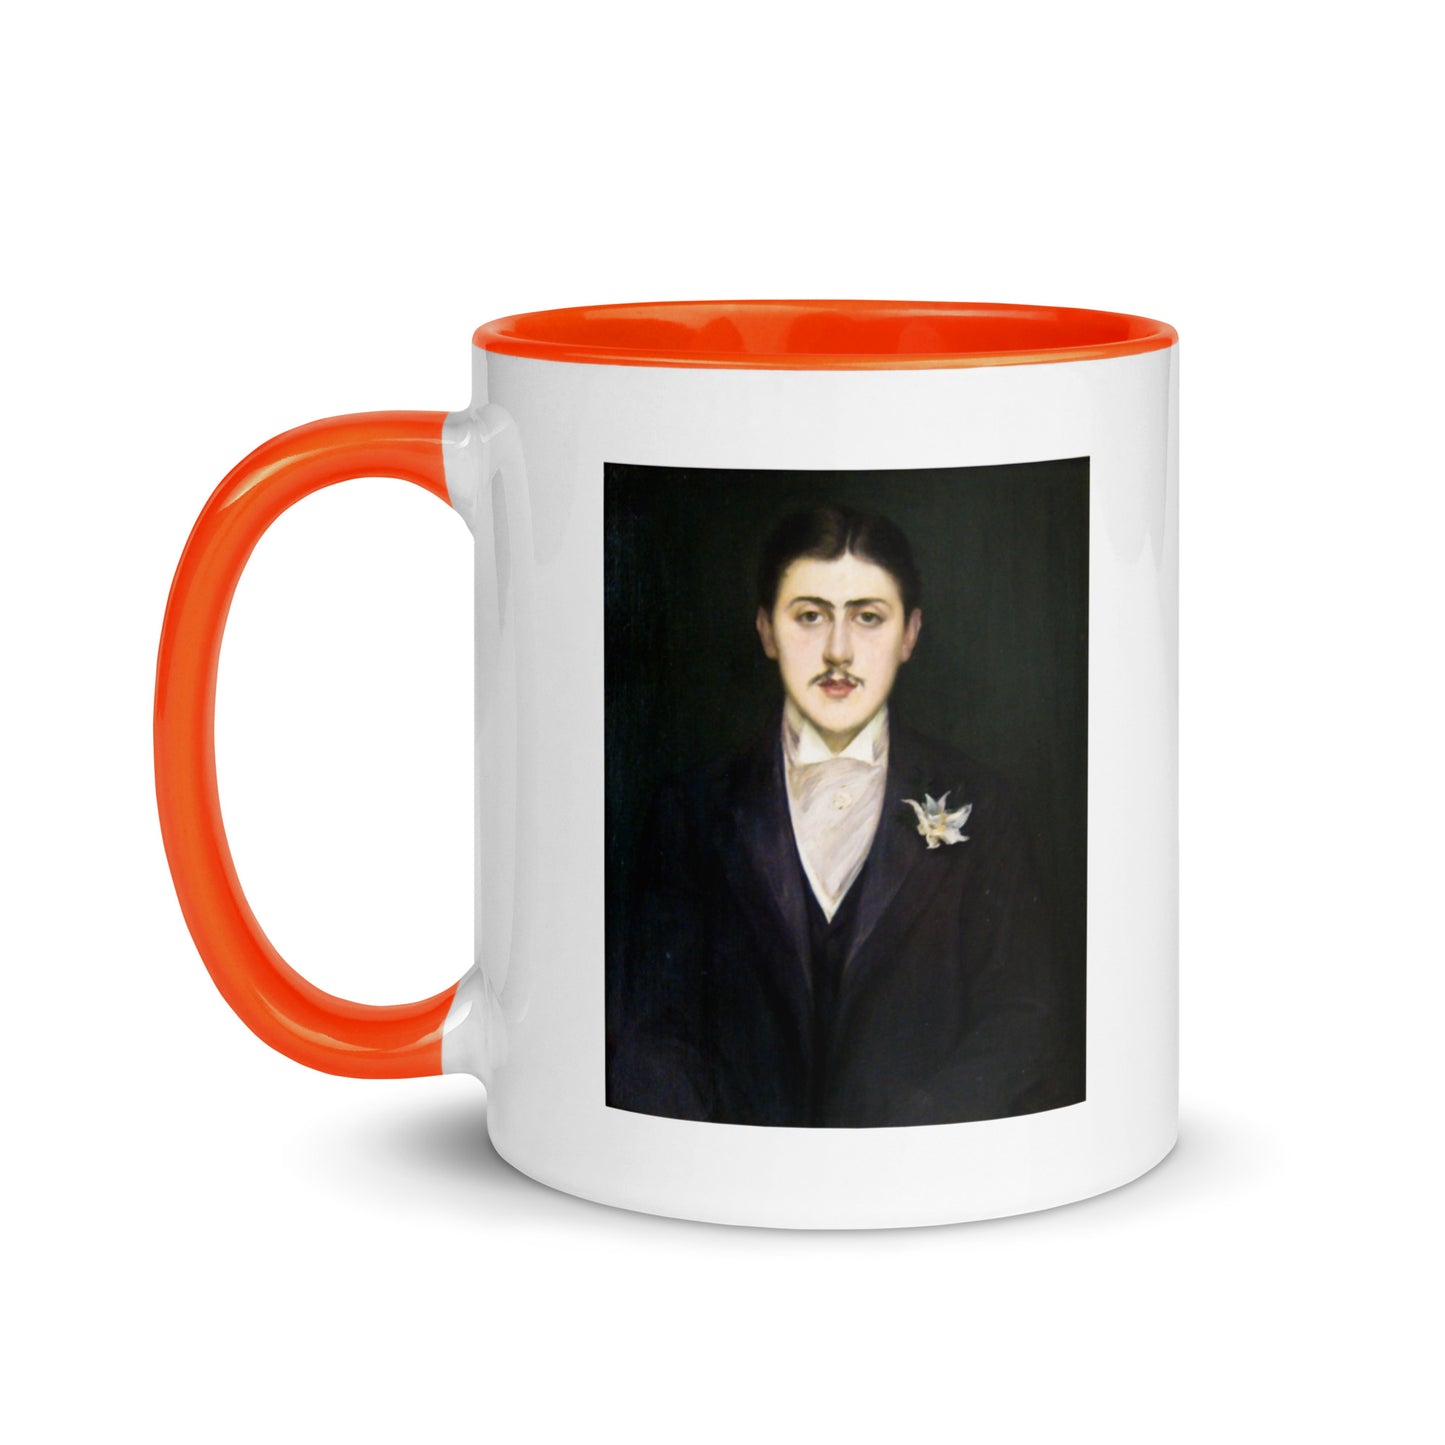 Marcel Proust mug with color inside